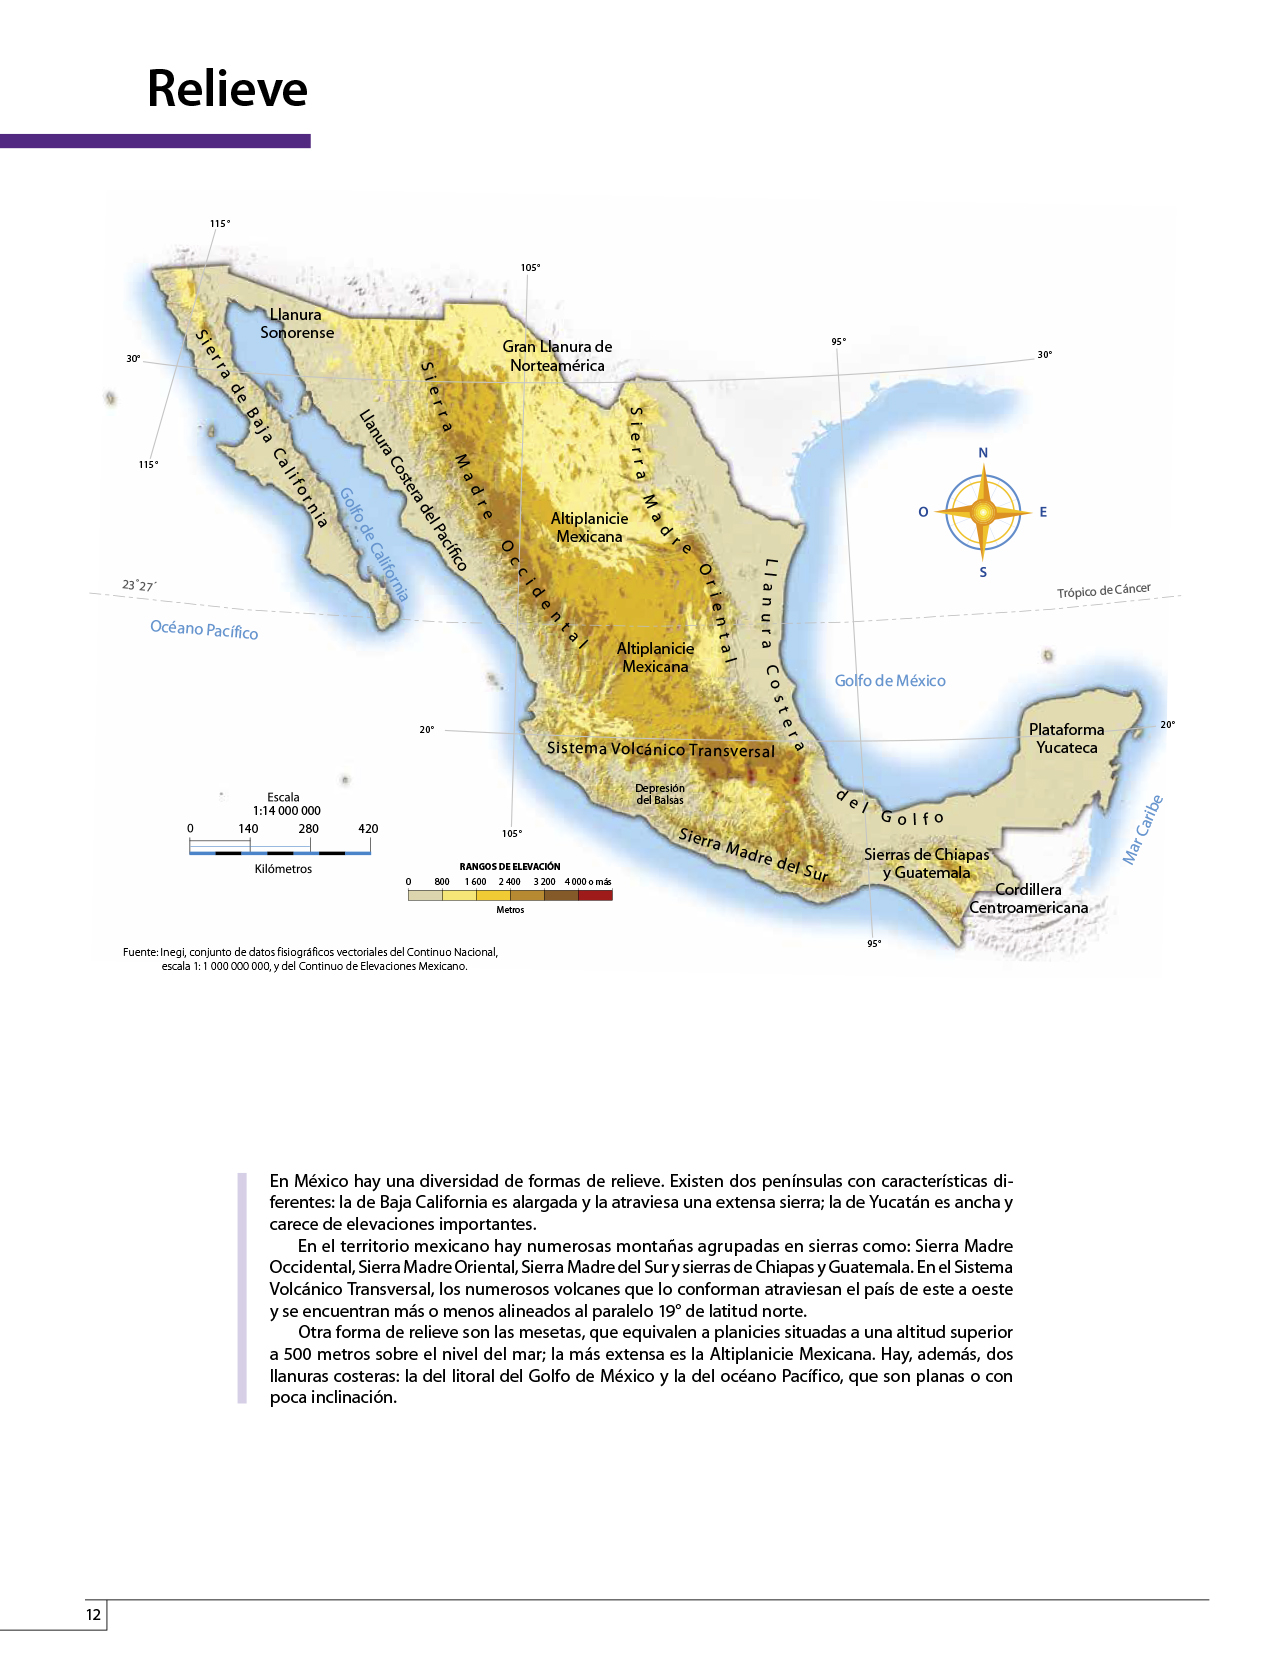 Atlas de México cuarto grado 2017-2018 - Página 12 de 130 ...